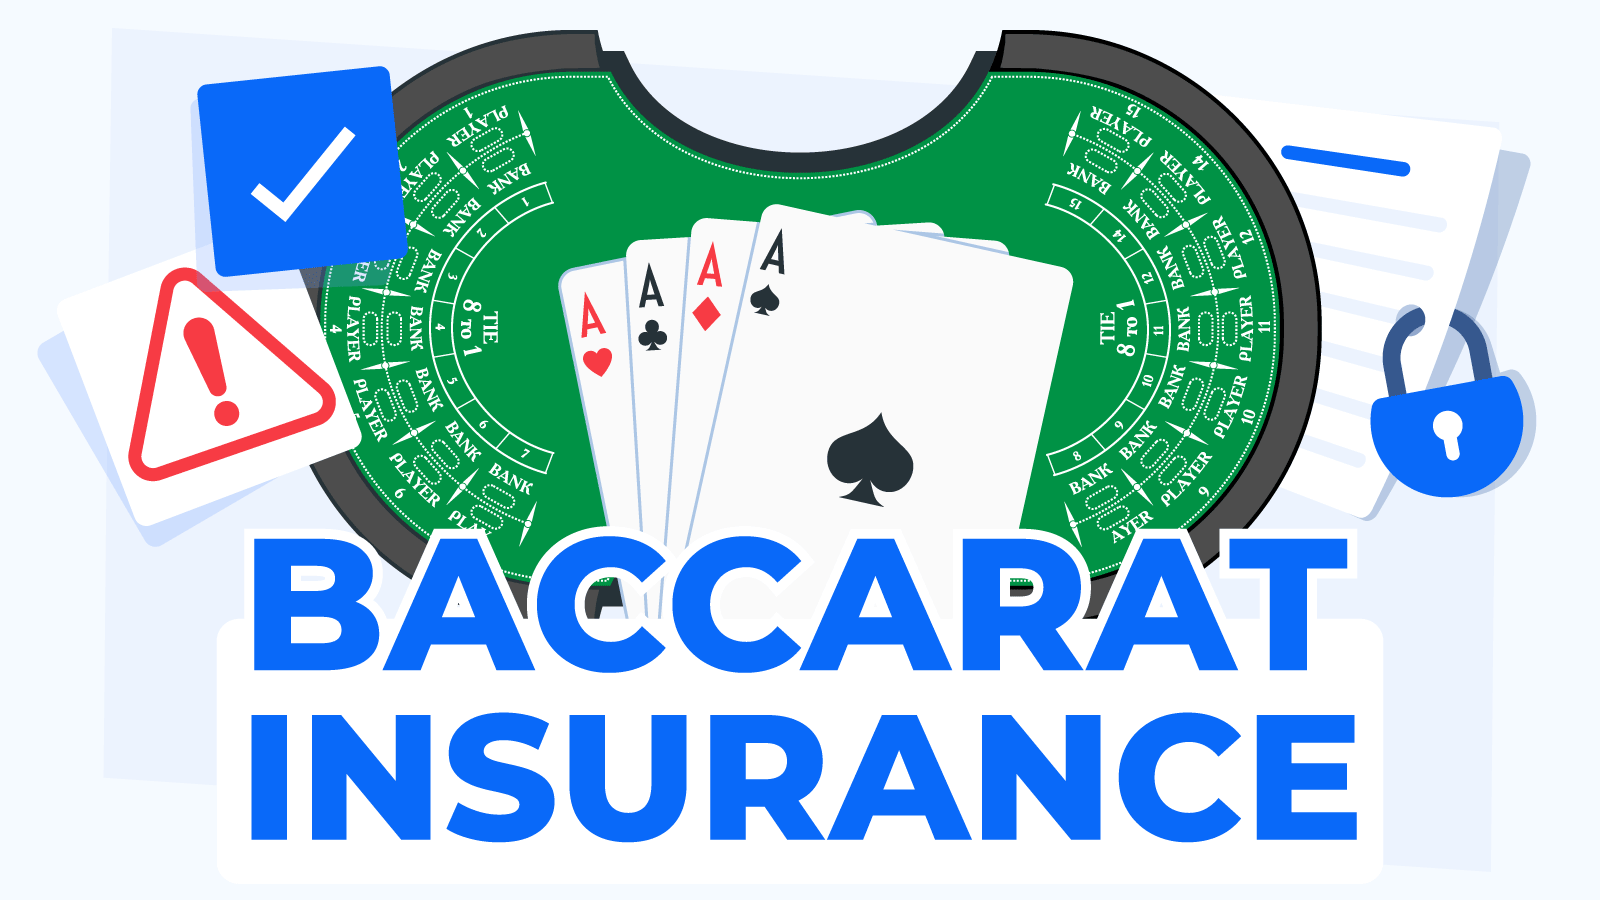 Mengenal cara bermain kasino Insurance Baccarat